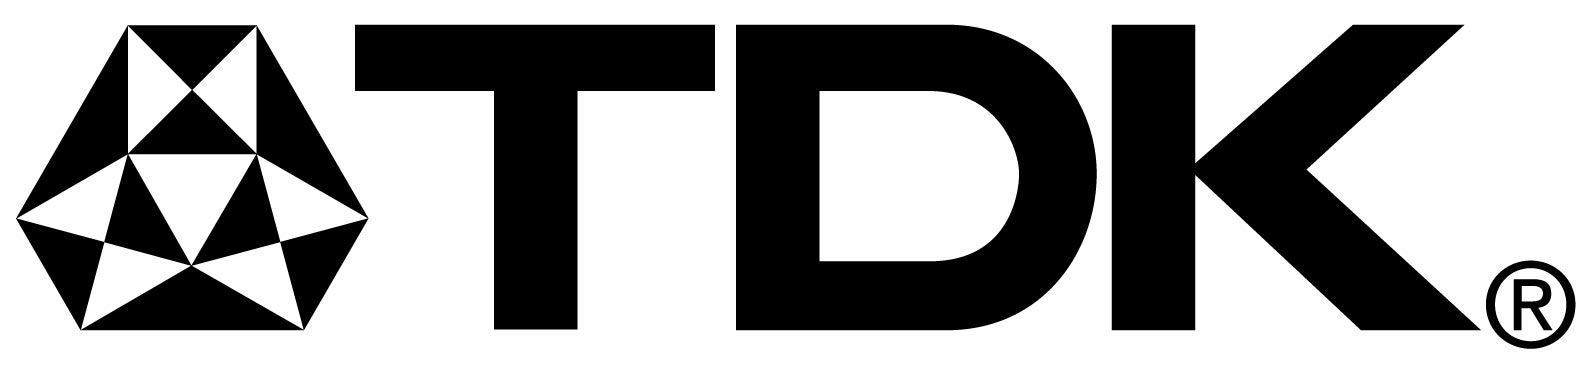 Tdk Logos